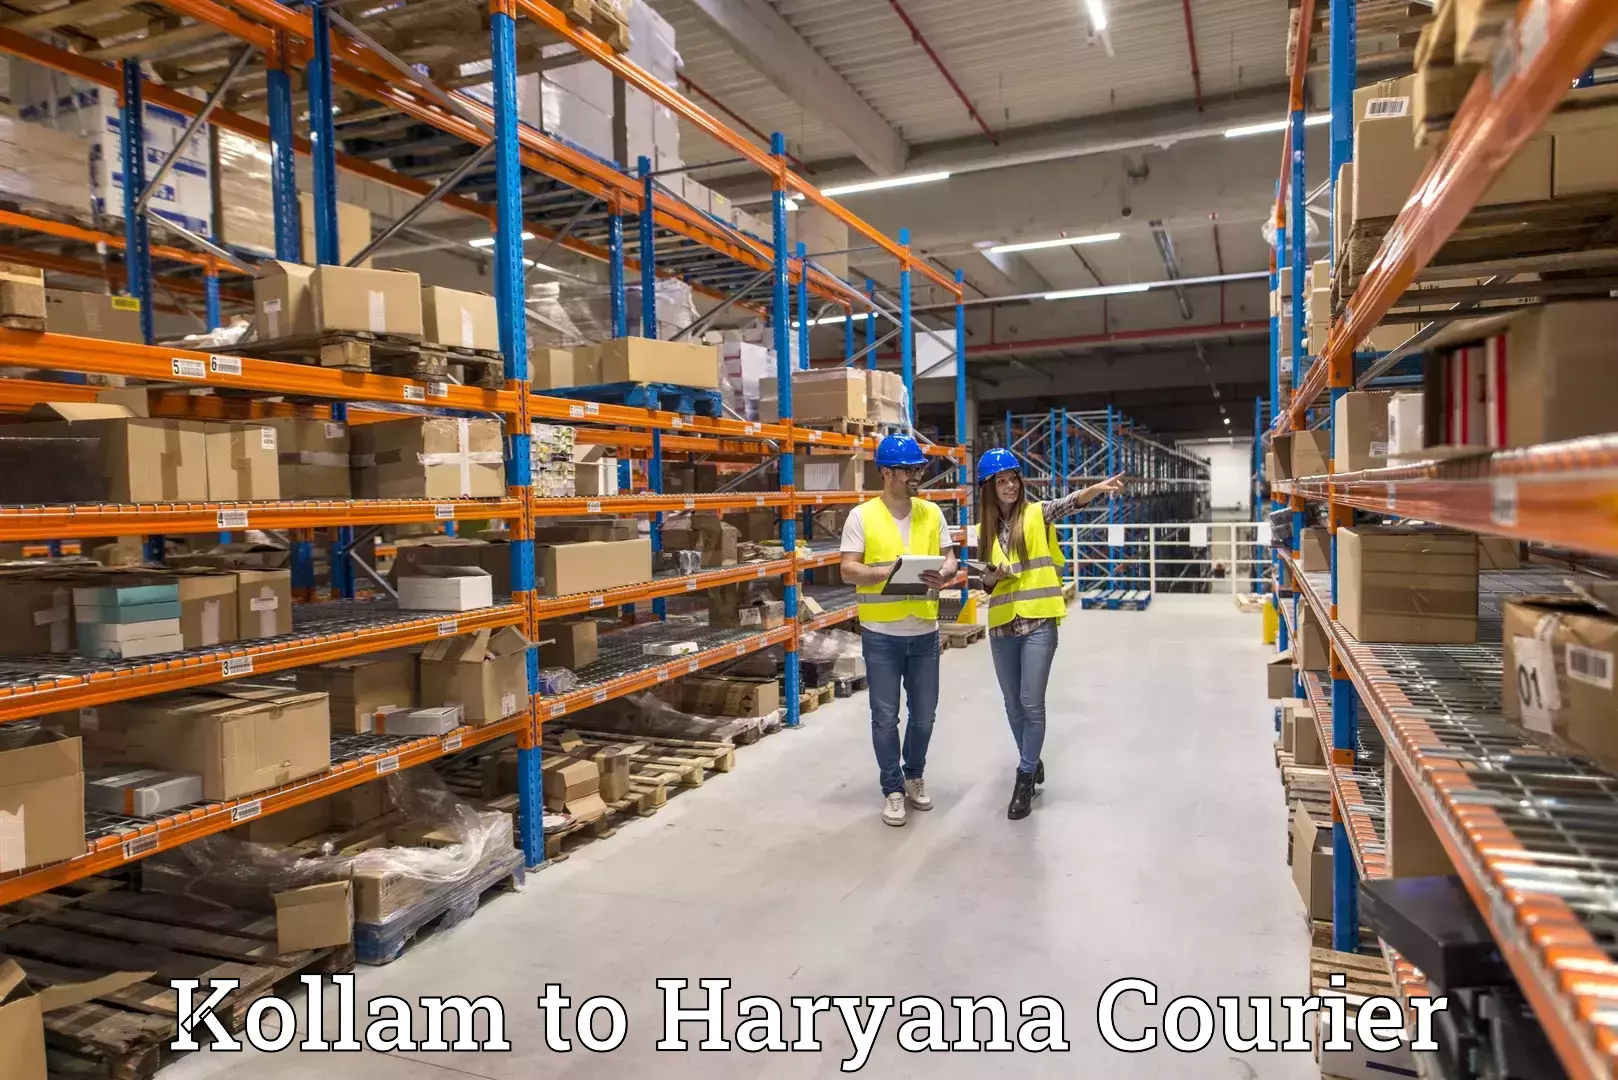 High-performance logistics Kollam to Panipat